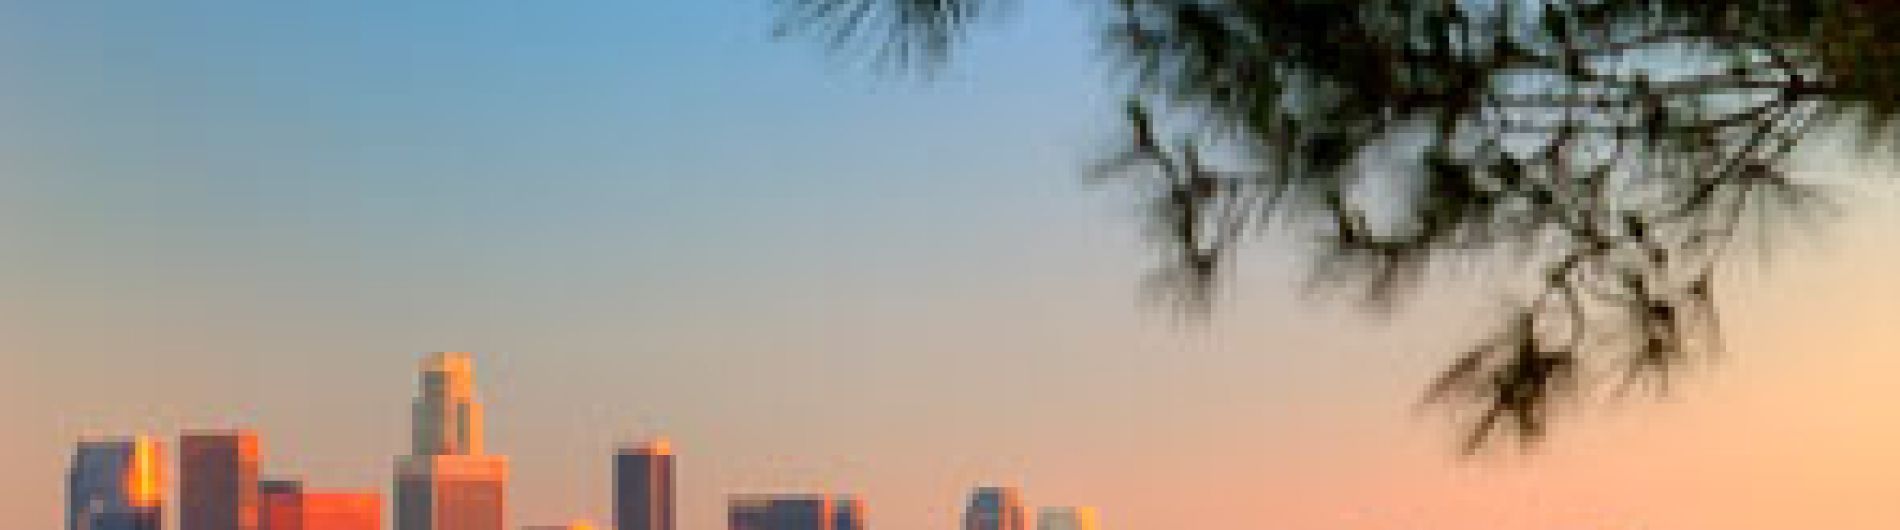 Los Angeles Skyline United States of America 